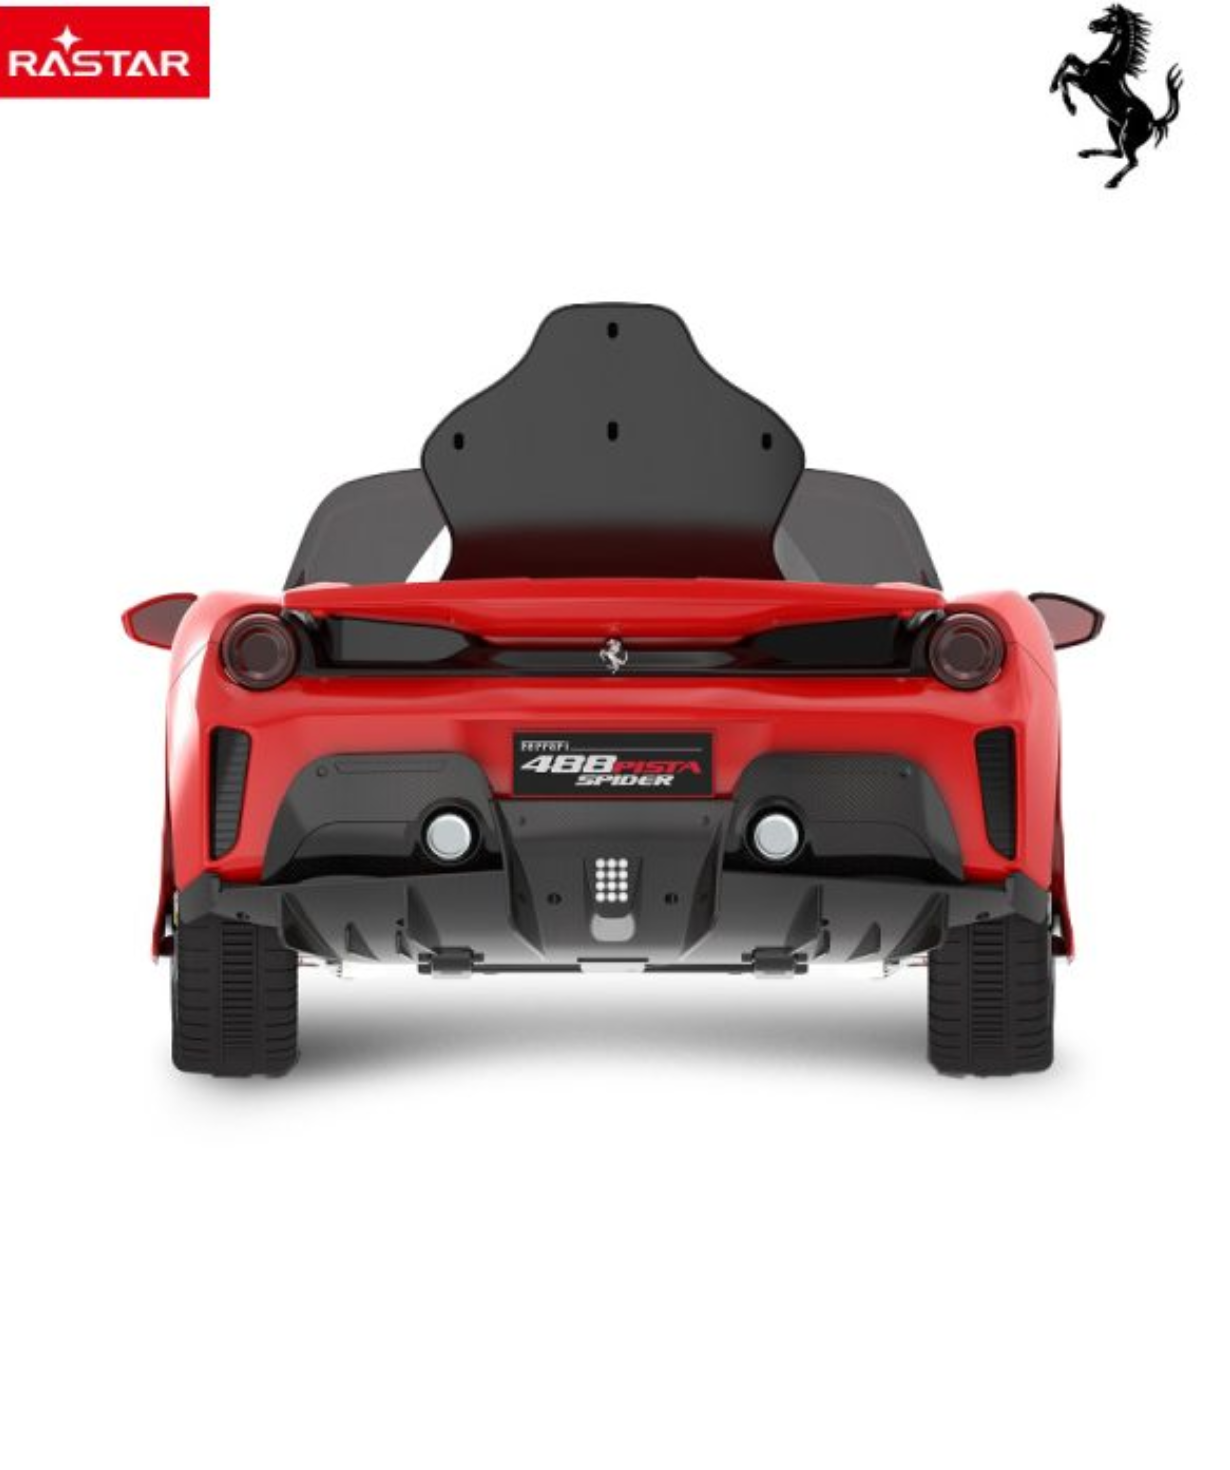 Car Rastar Ferrari r/c